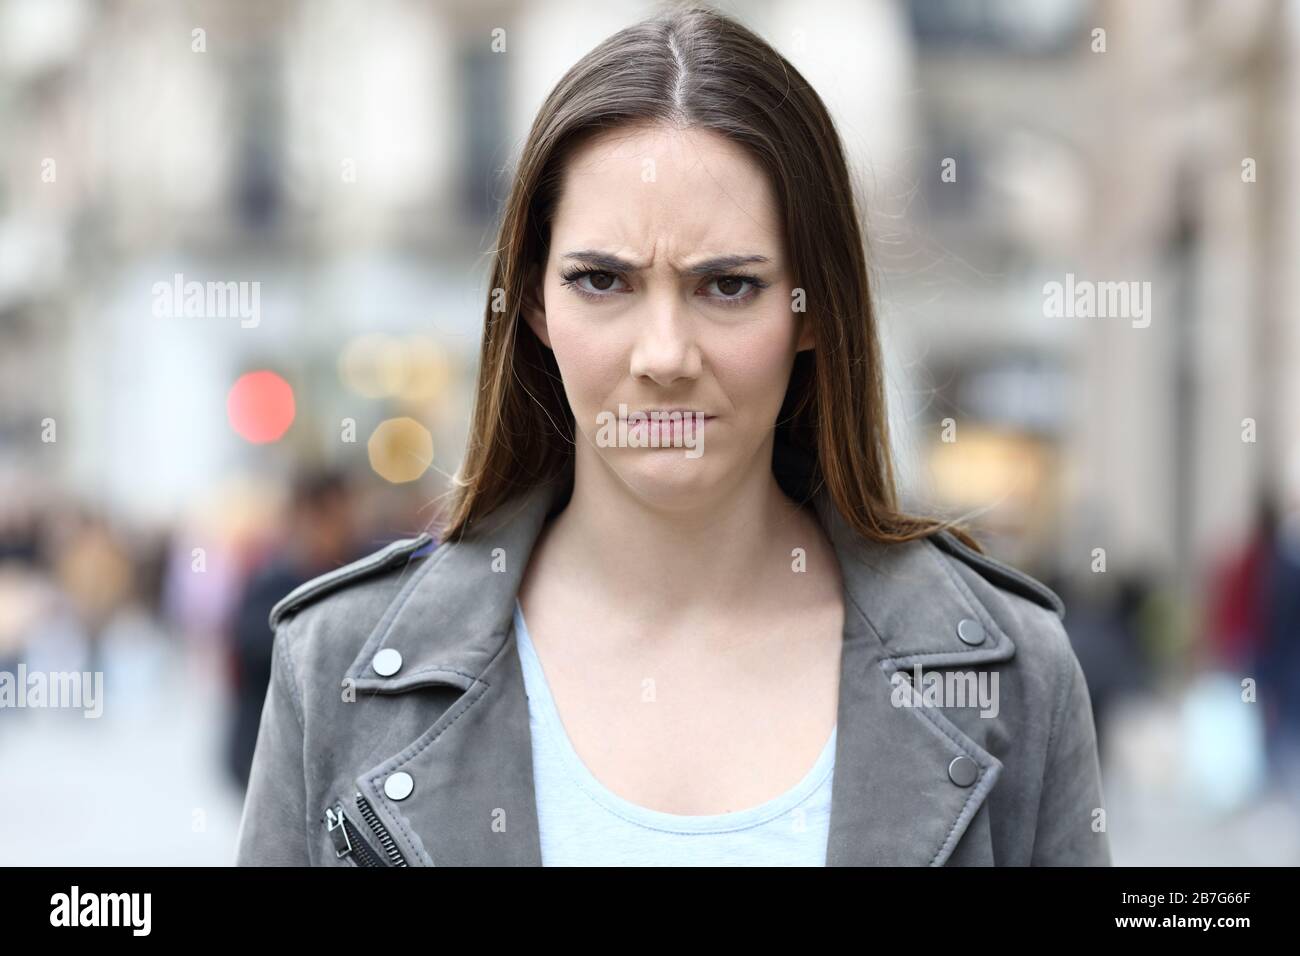 Vista frontale ritratto di una donna arrabbiata che guarda infastidito alla macchina fotografica sulla strada della città Foto Stock